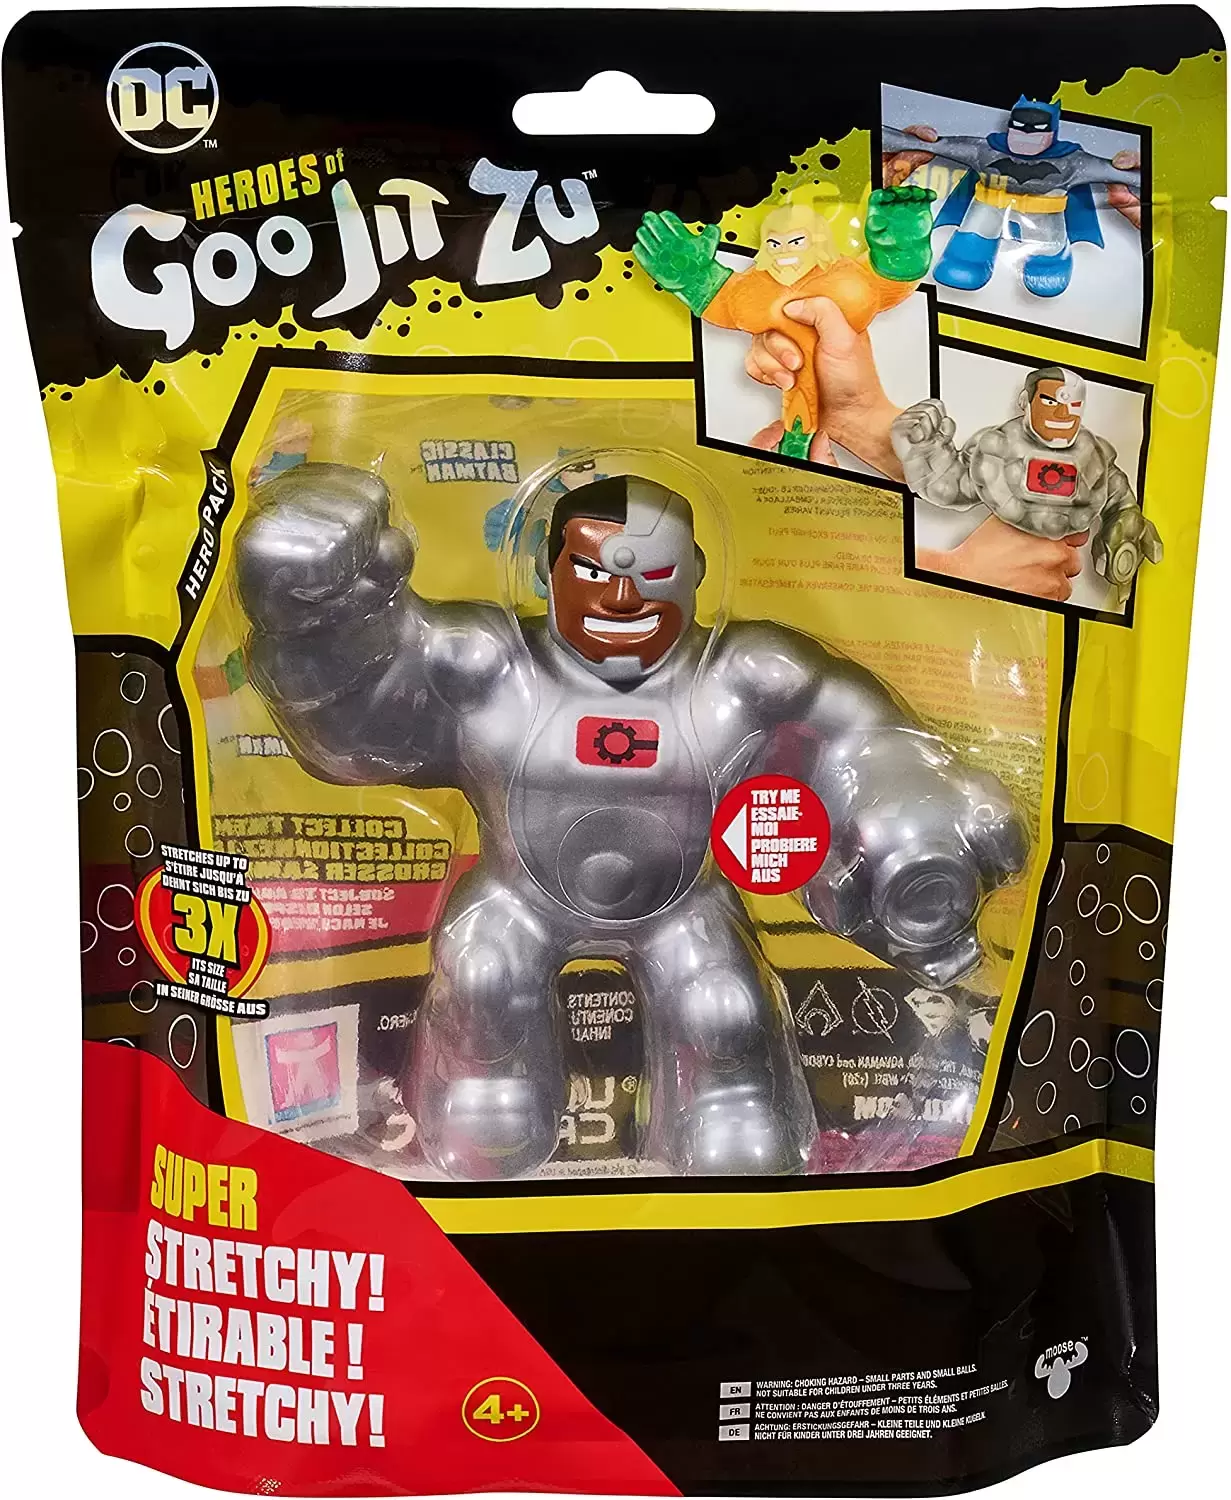 Heroes of Goo Jit Zu - DC - Cyborg